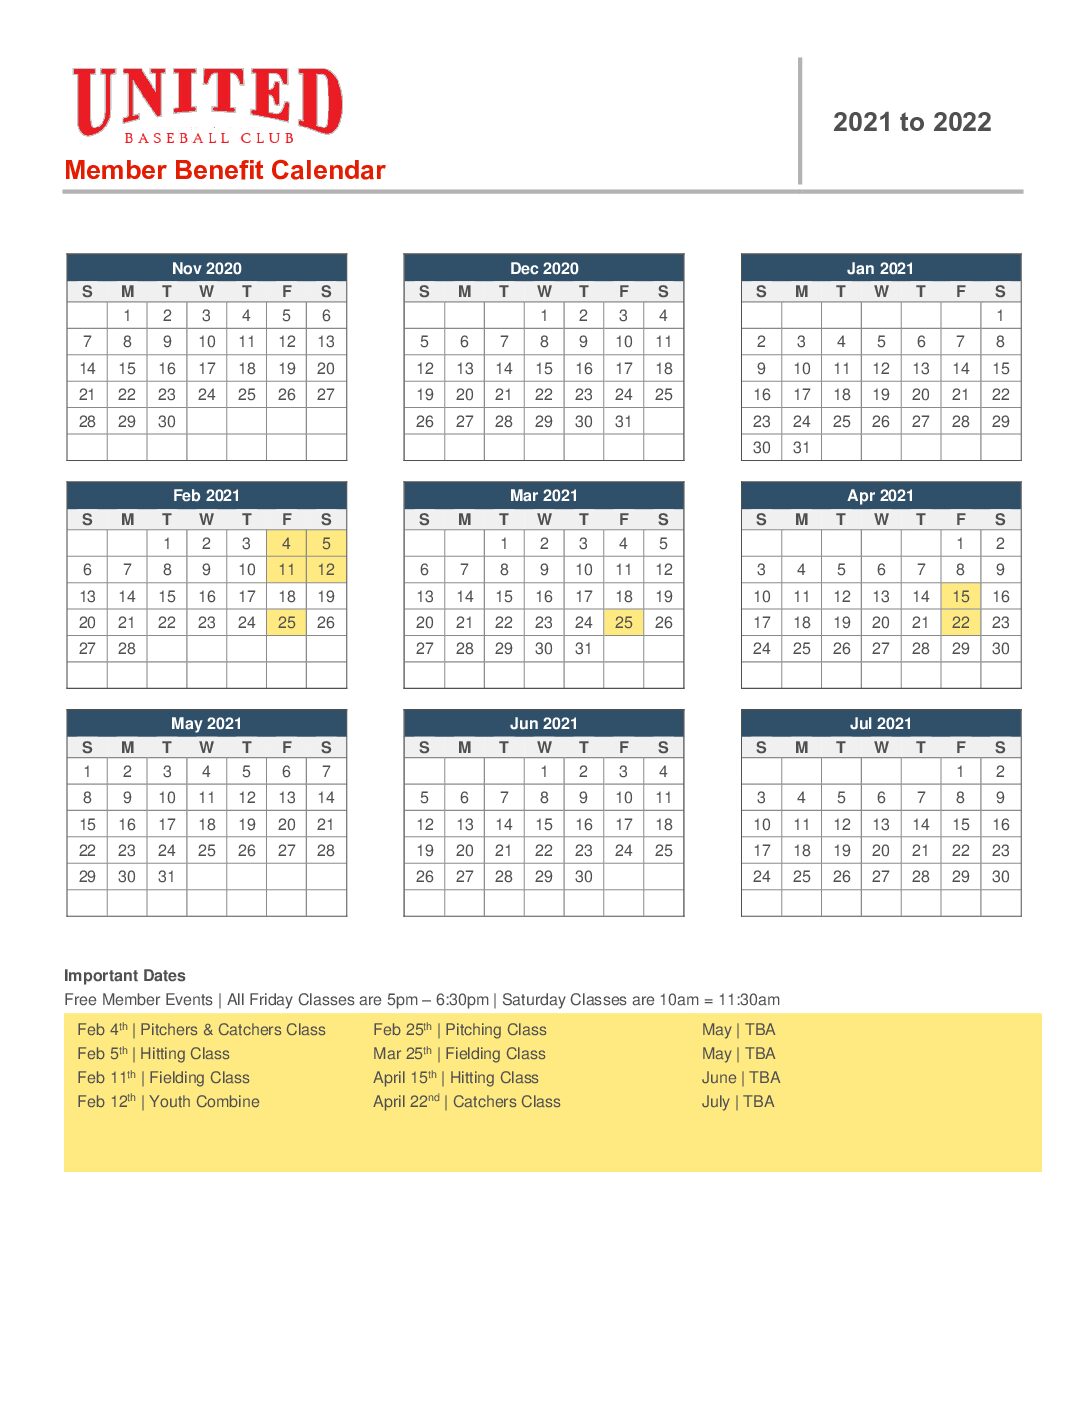 Member Benefit Calendar 2021-2022